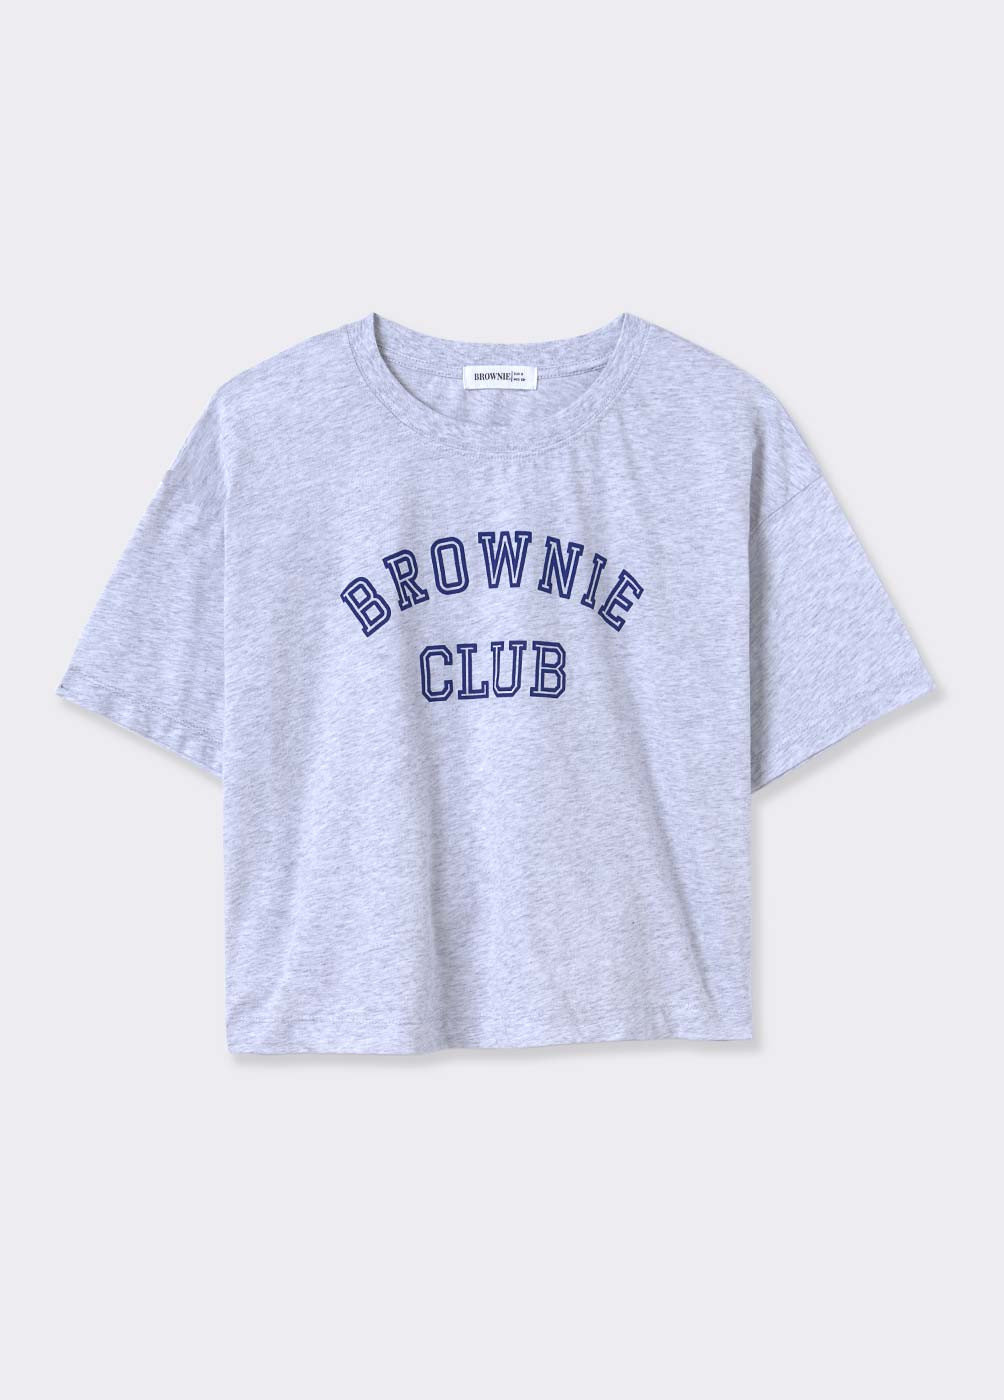 T-SHIRT BROWNIE CLUB